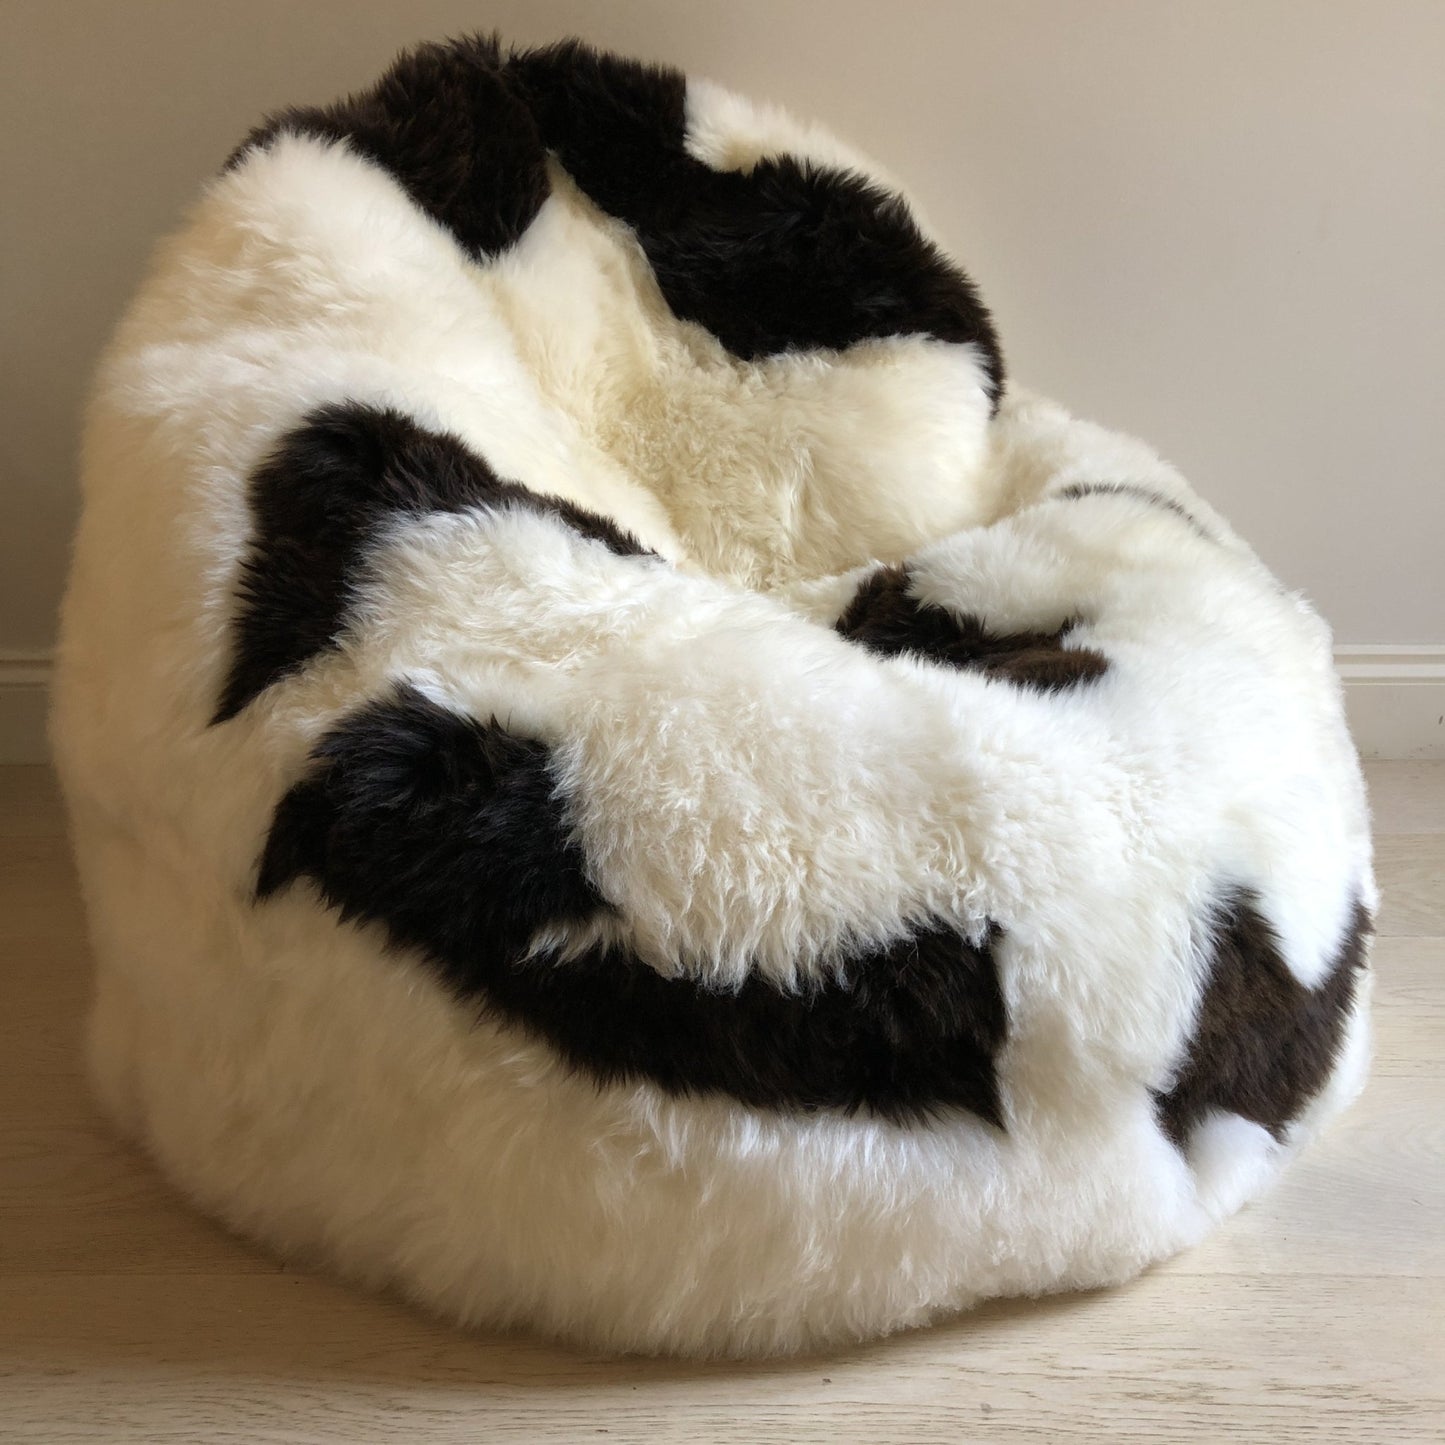 Sheepskin Beanbag Chair 100% Natural British White & Brown Spotted Bean Bag - Wildash London